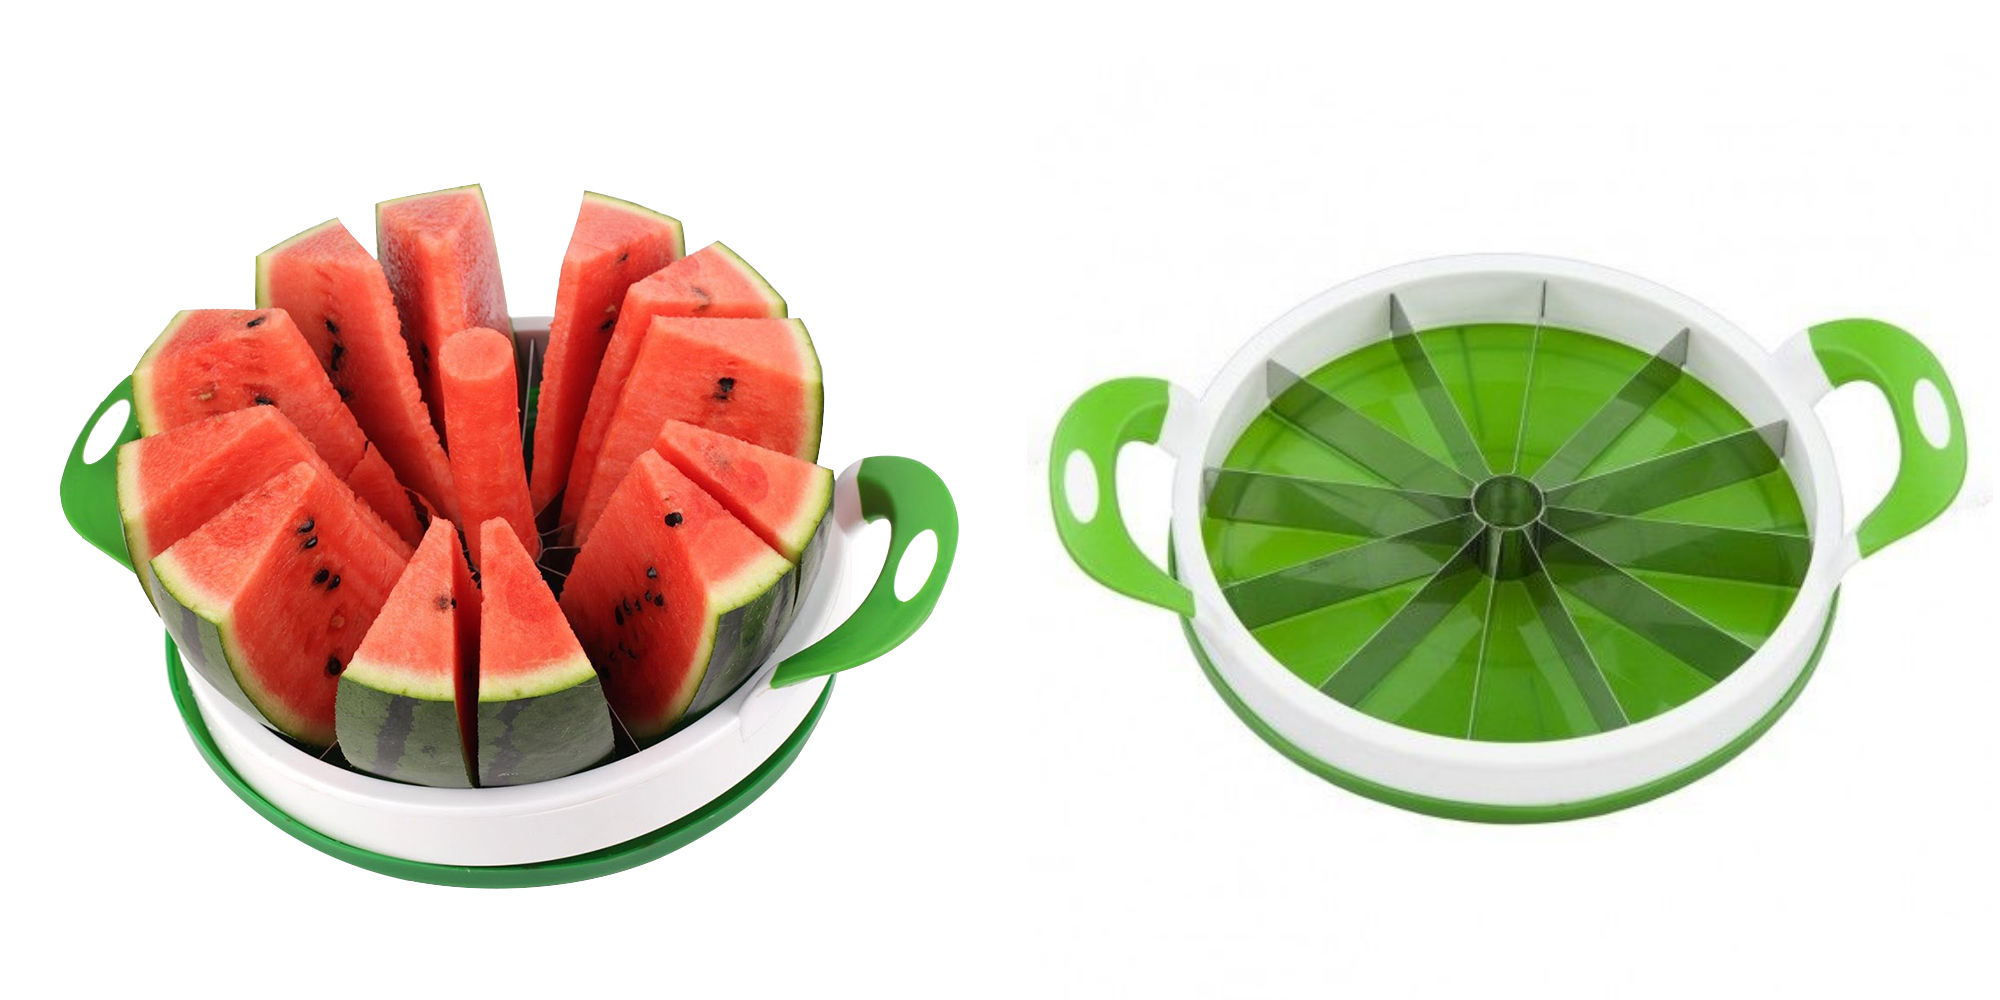 Home Basics Heavy Duty Watermelon Slicer—$16.99 + FREE Shipping!